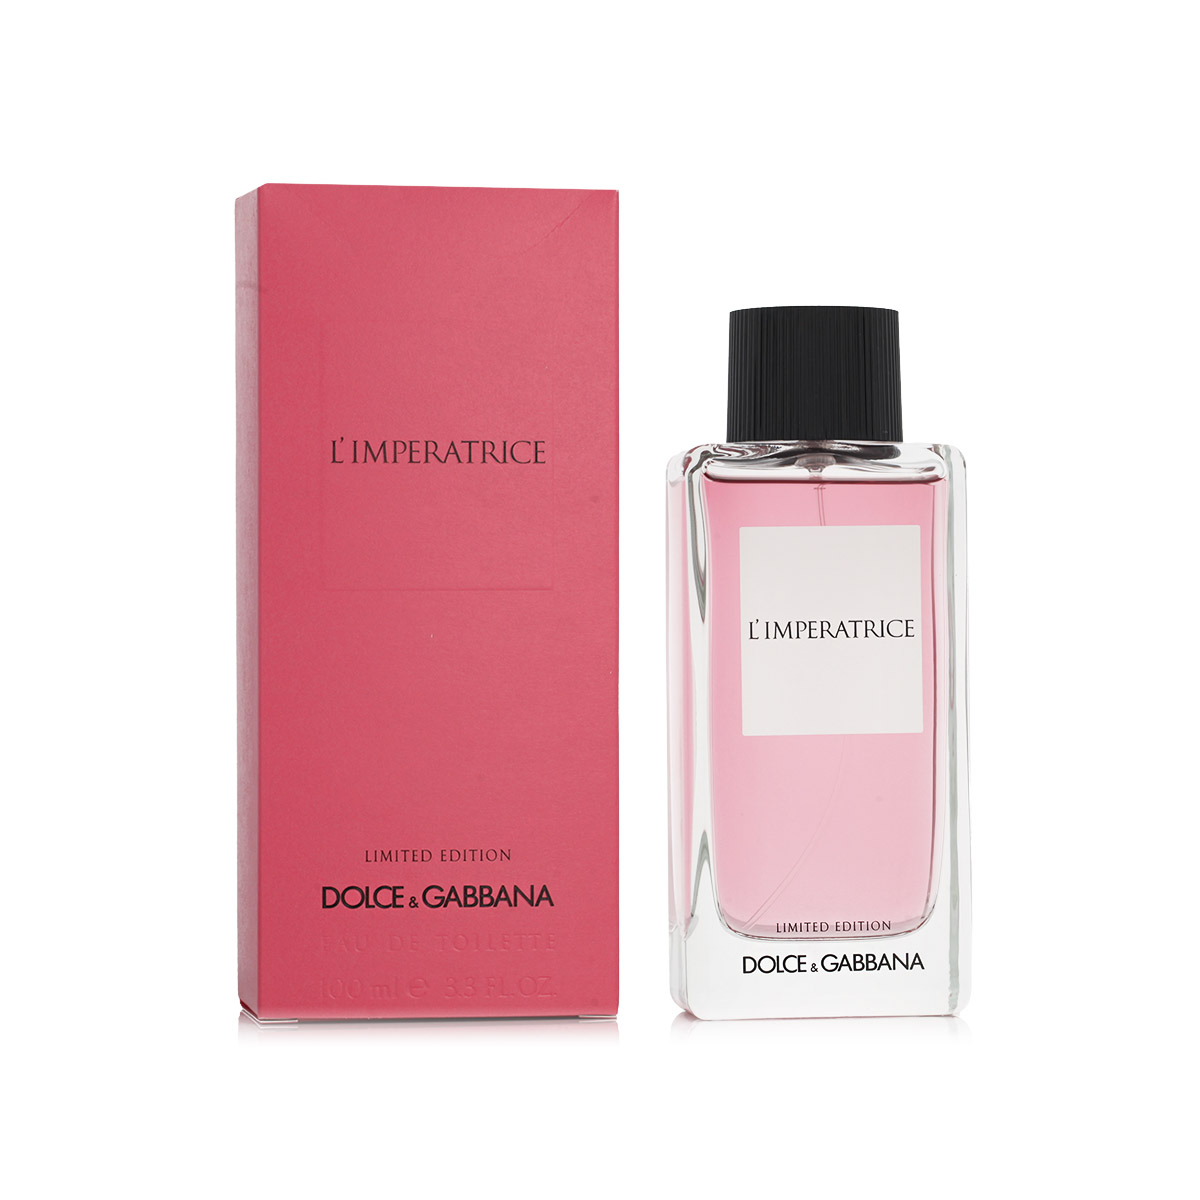 Dolce & Gabbana L'Imperatrice Limited Edition 20 ml kvepalų mėginukas (atomaizeris) Moterims EDT